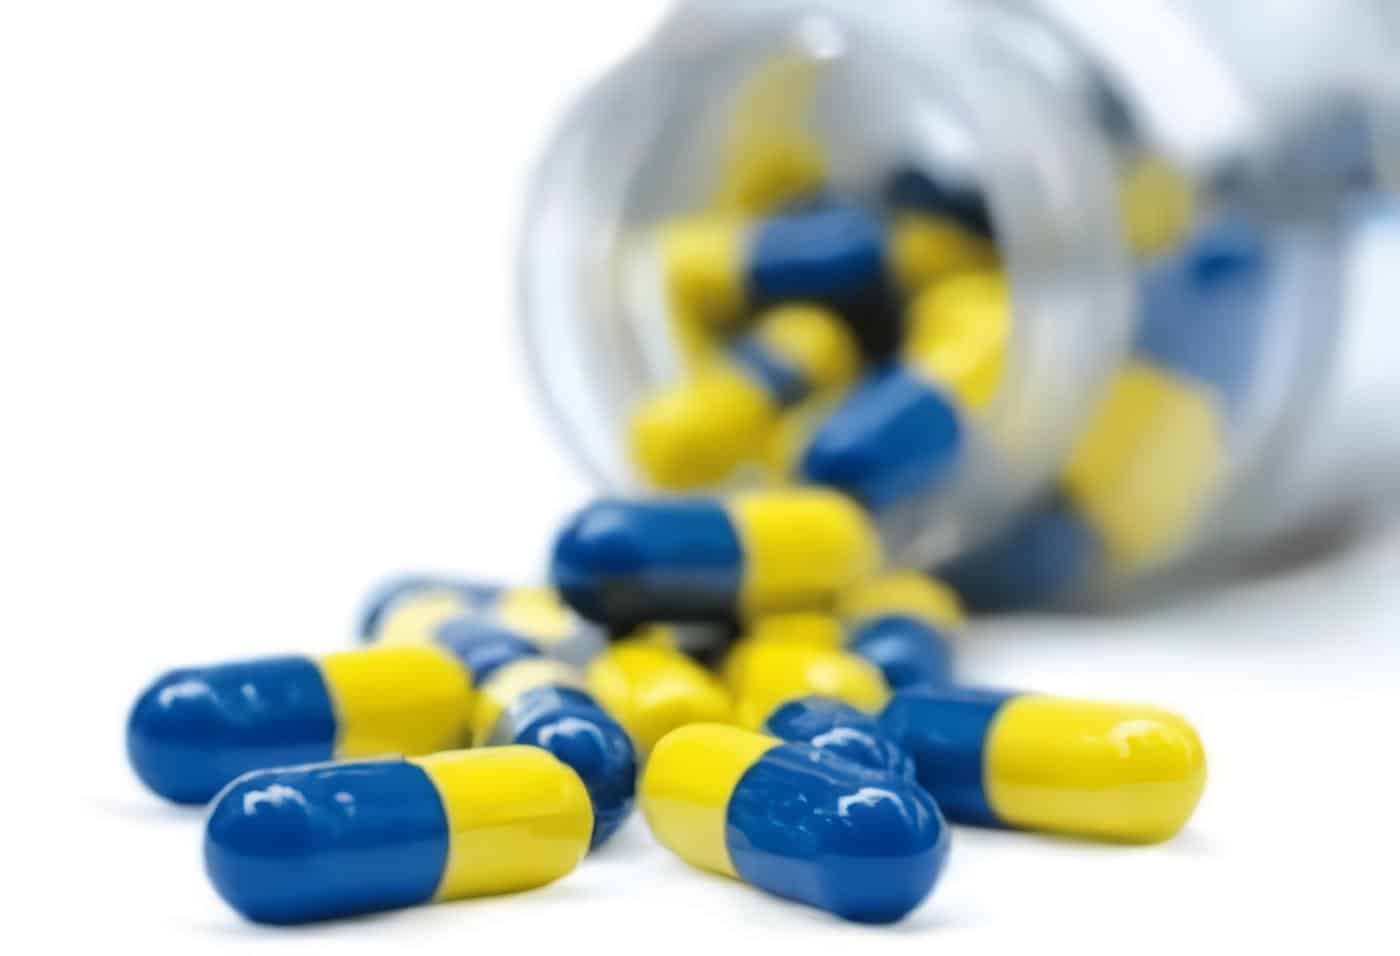 FDA Reduce la Cantidad de Acetaminofeno Permitida en Analgésicos con Receta